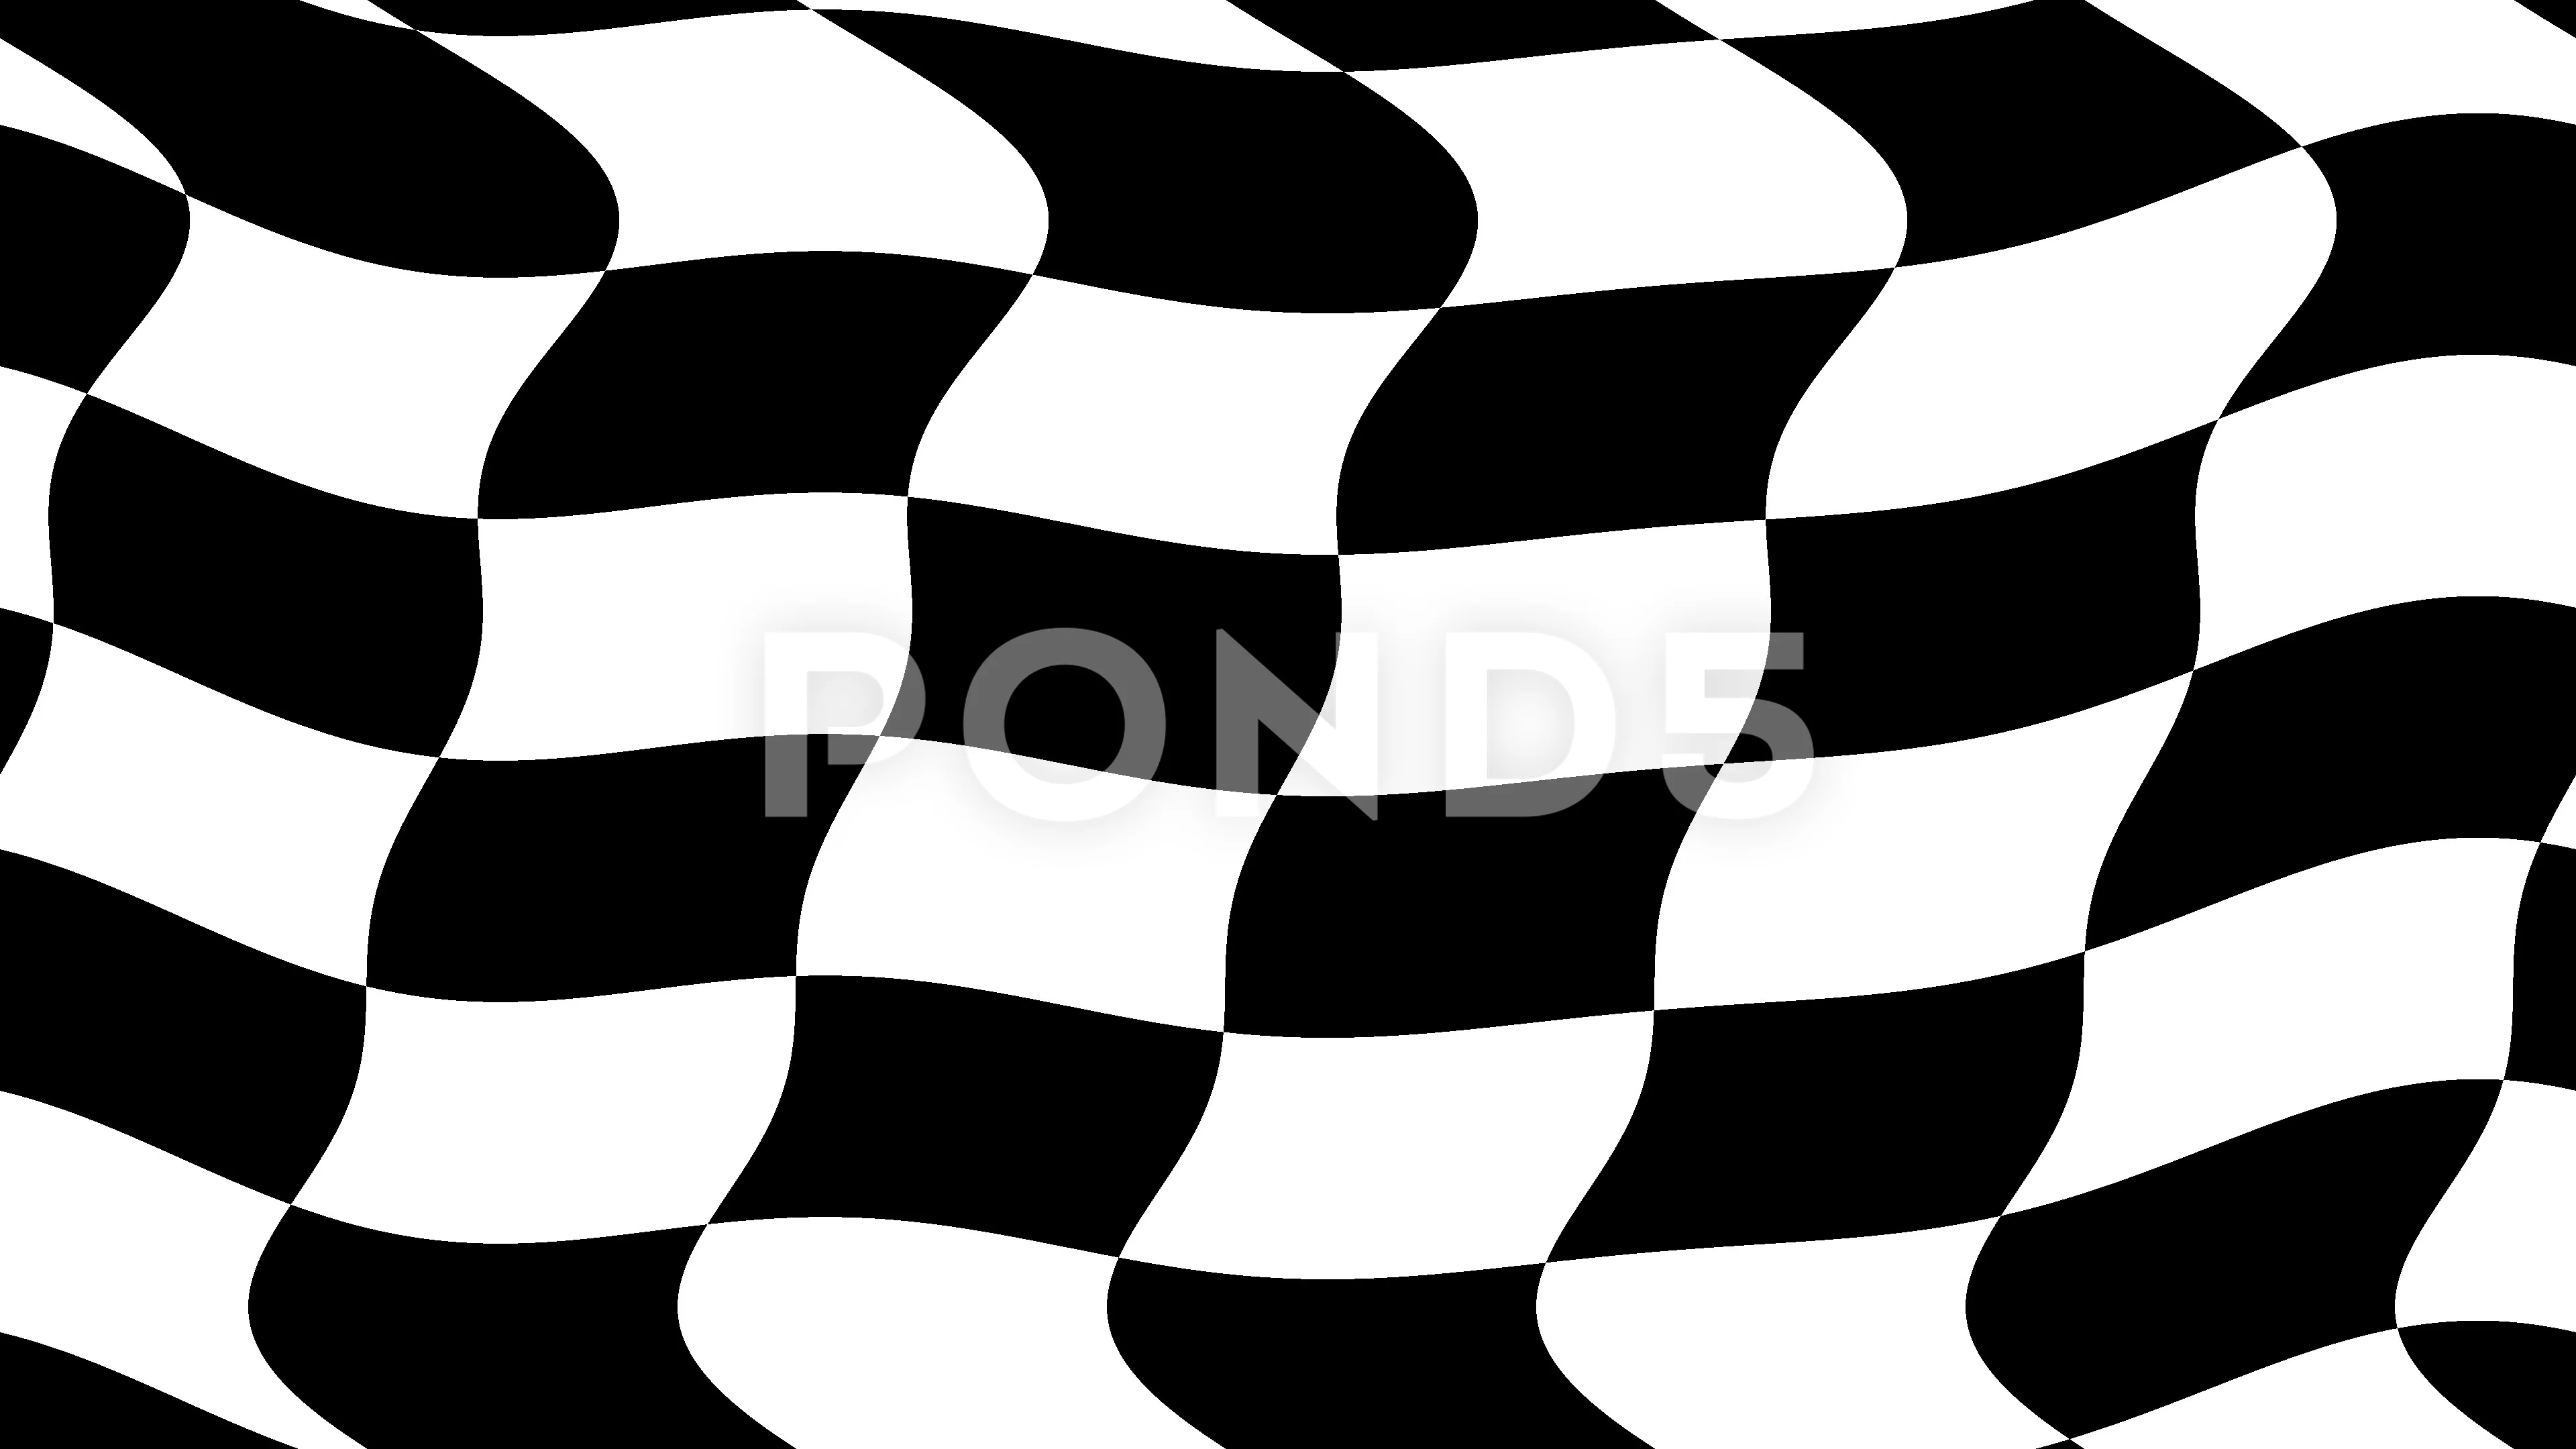 wavy checkered flag vector